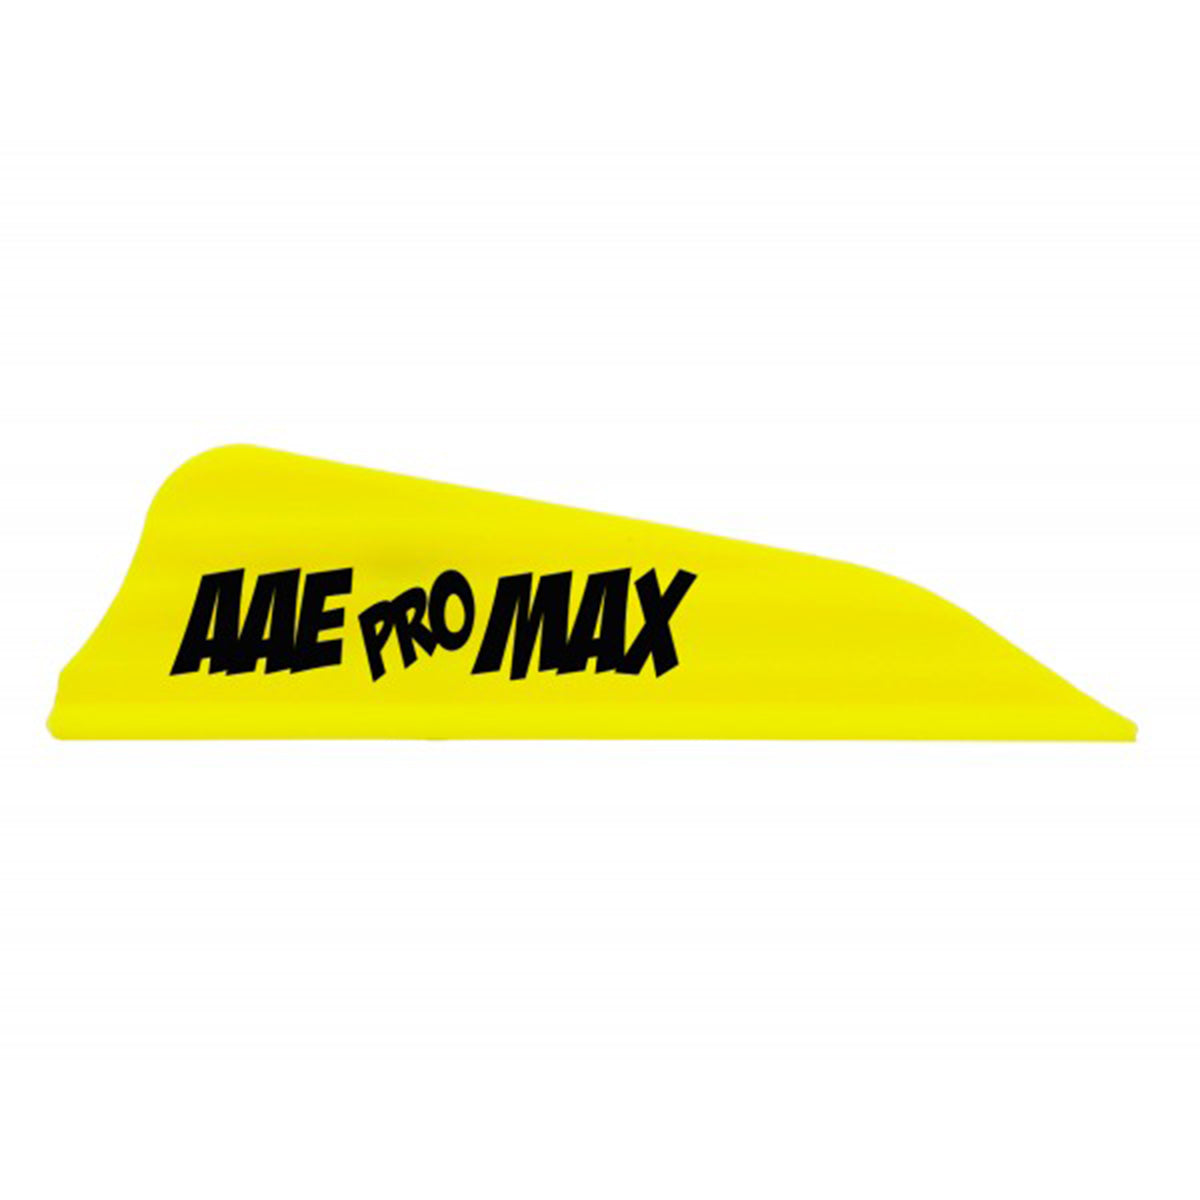 AAE Pro Max Arrow Vanes - 40 pack in Yellow by GOHUNT | AAE - GOHUNT Shop